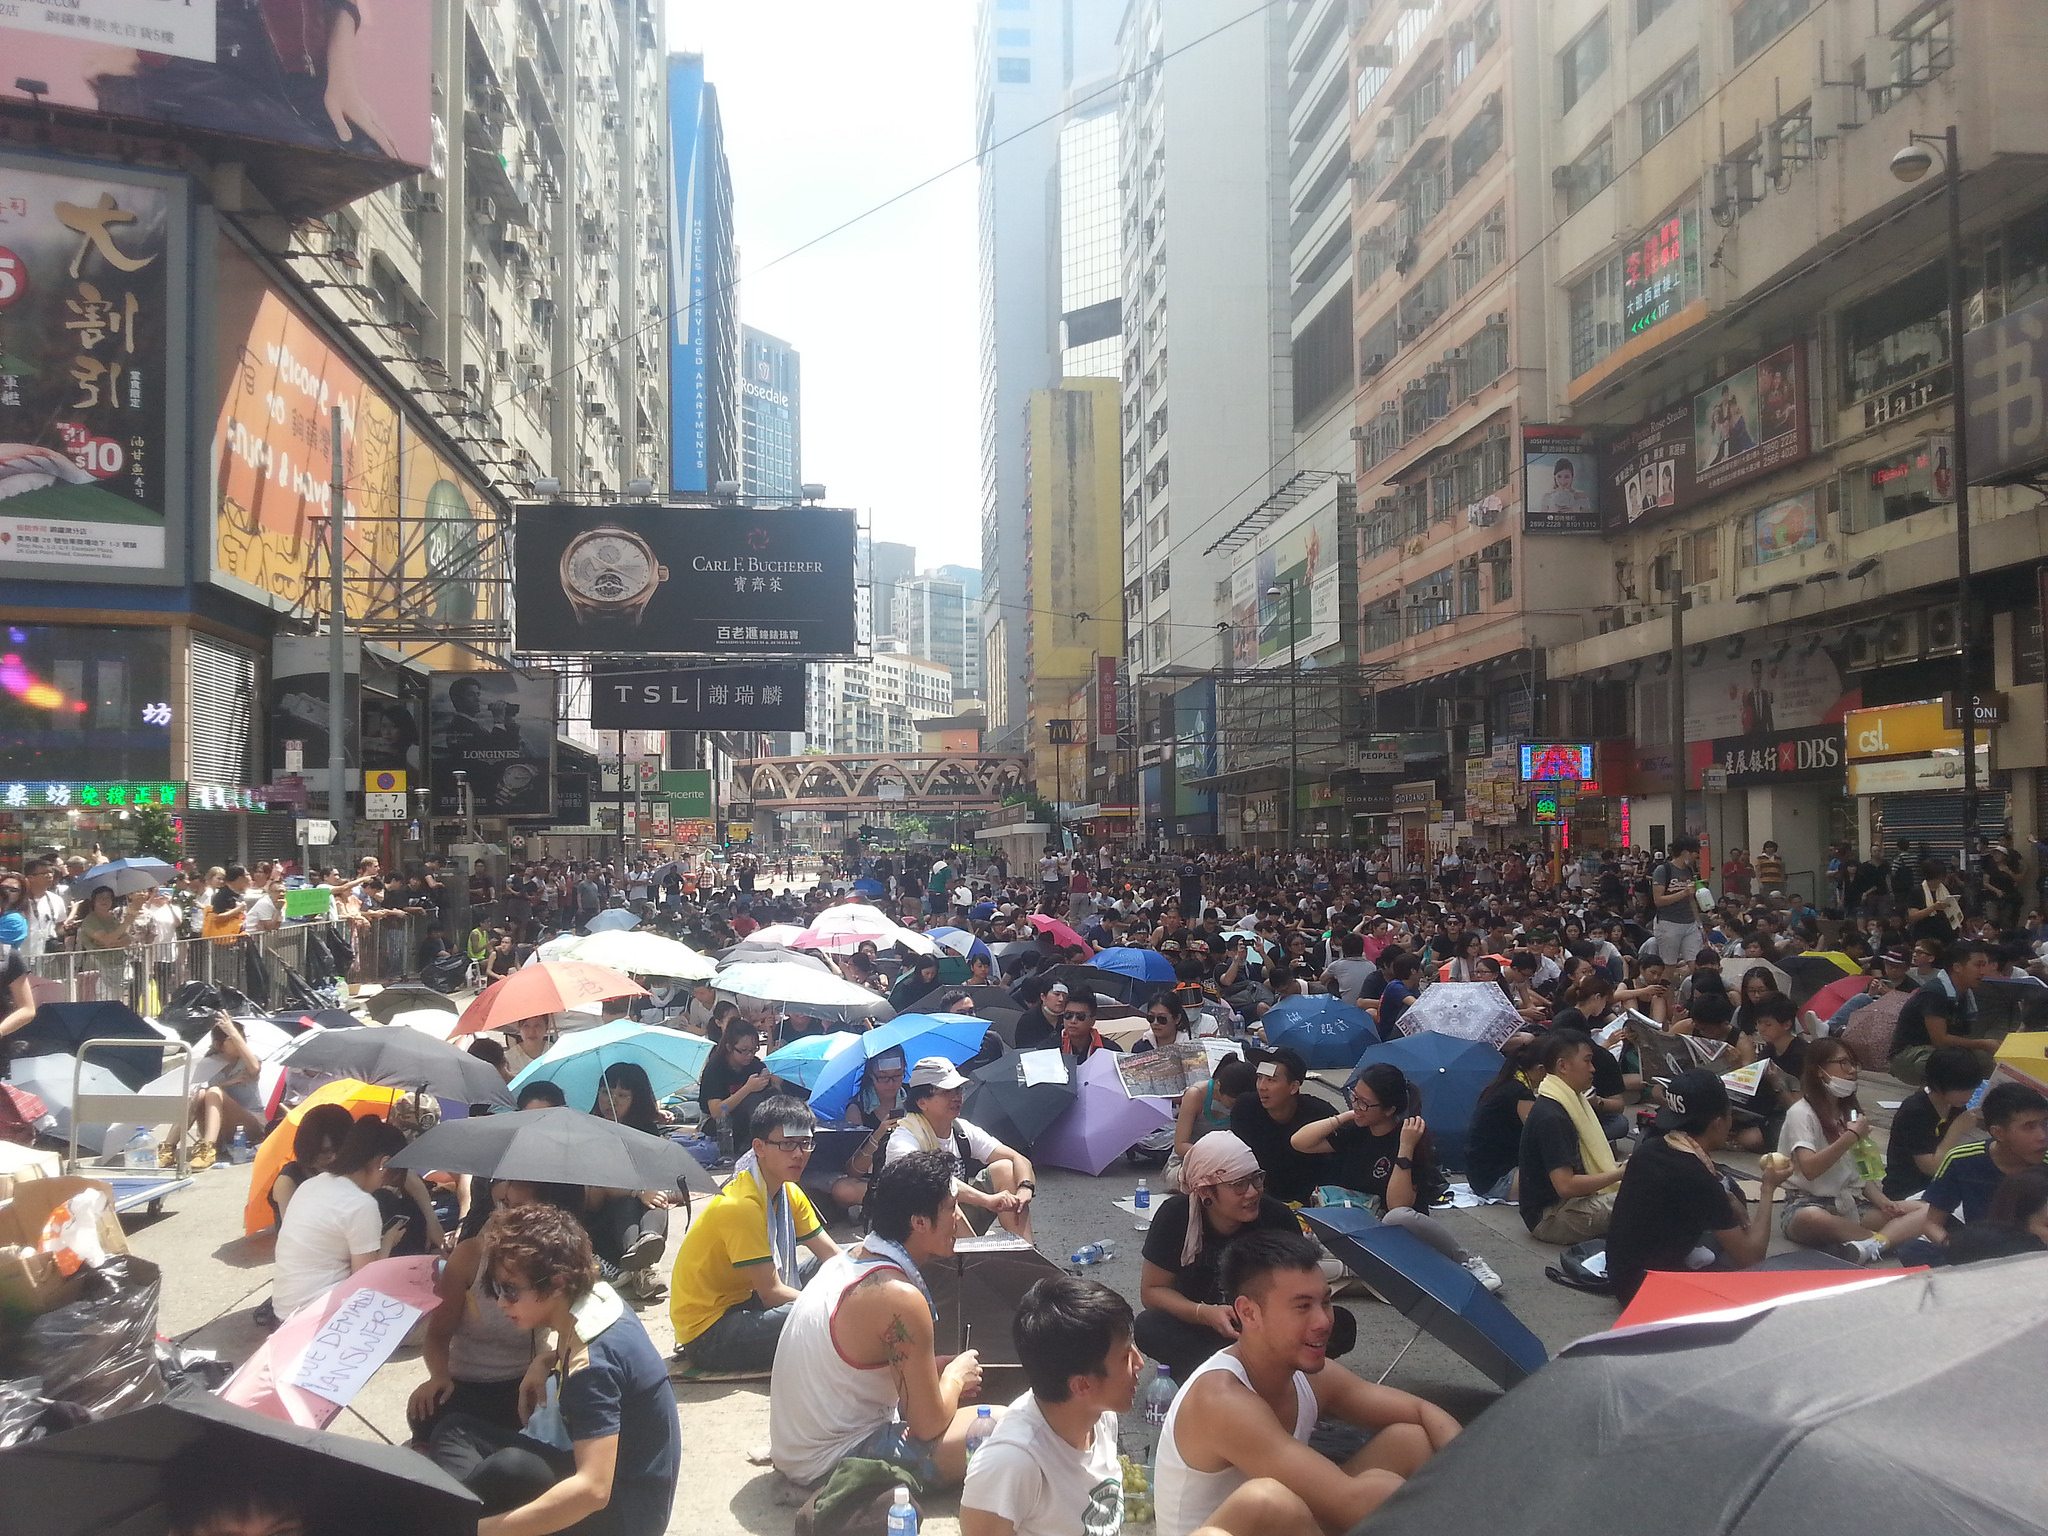 Οι διαδηλωτές στο Χονγκ Κονγκ φοβούνται καταστολή εν όψει εθνικής εορτής